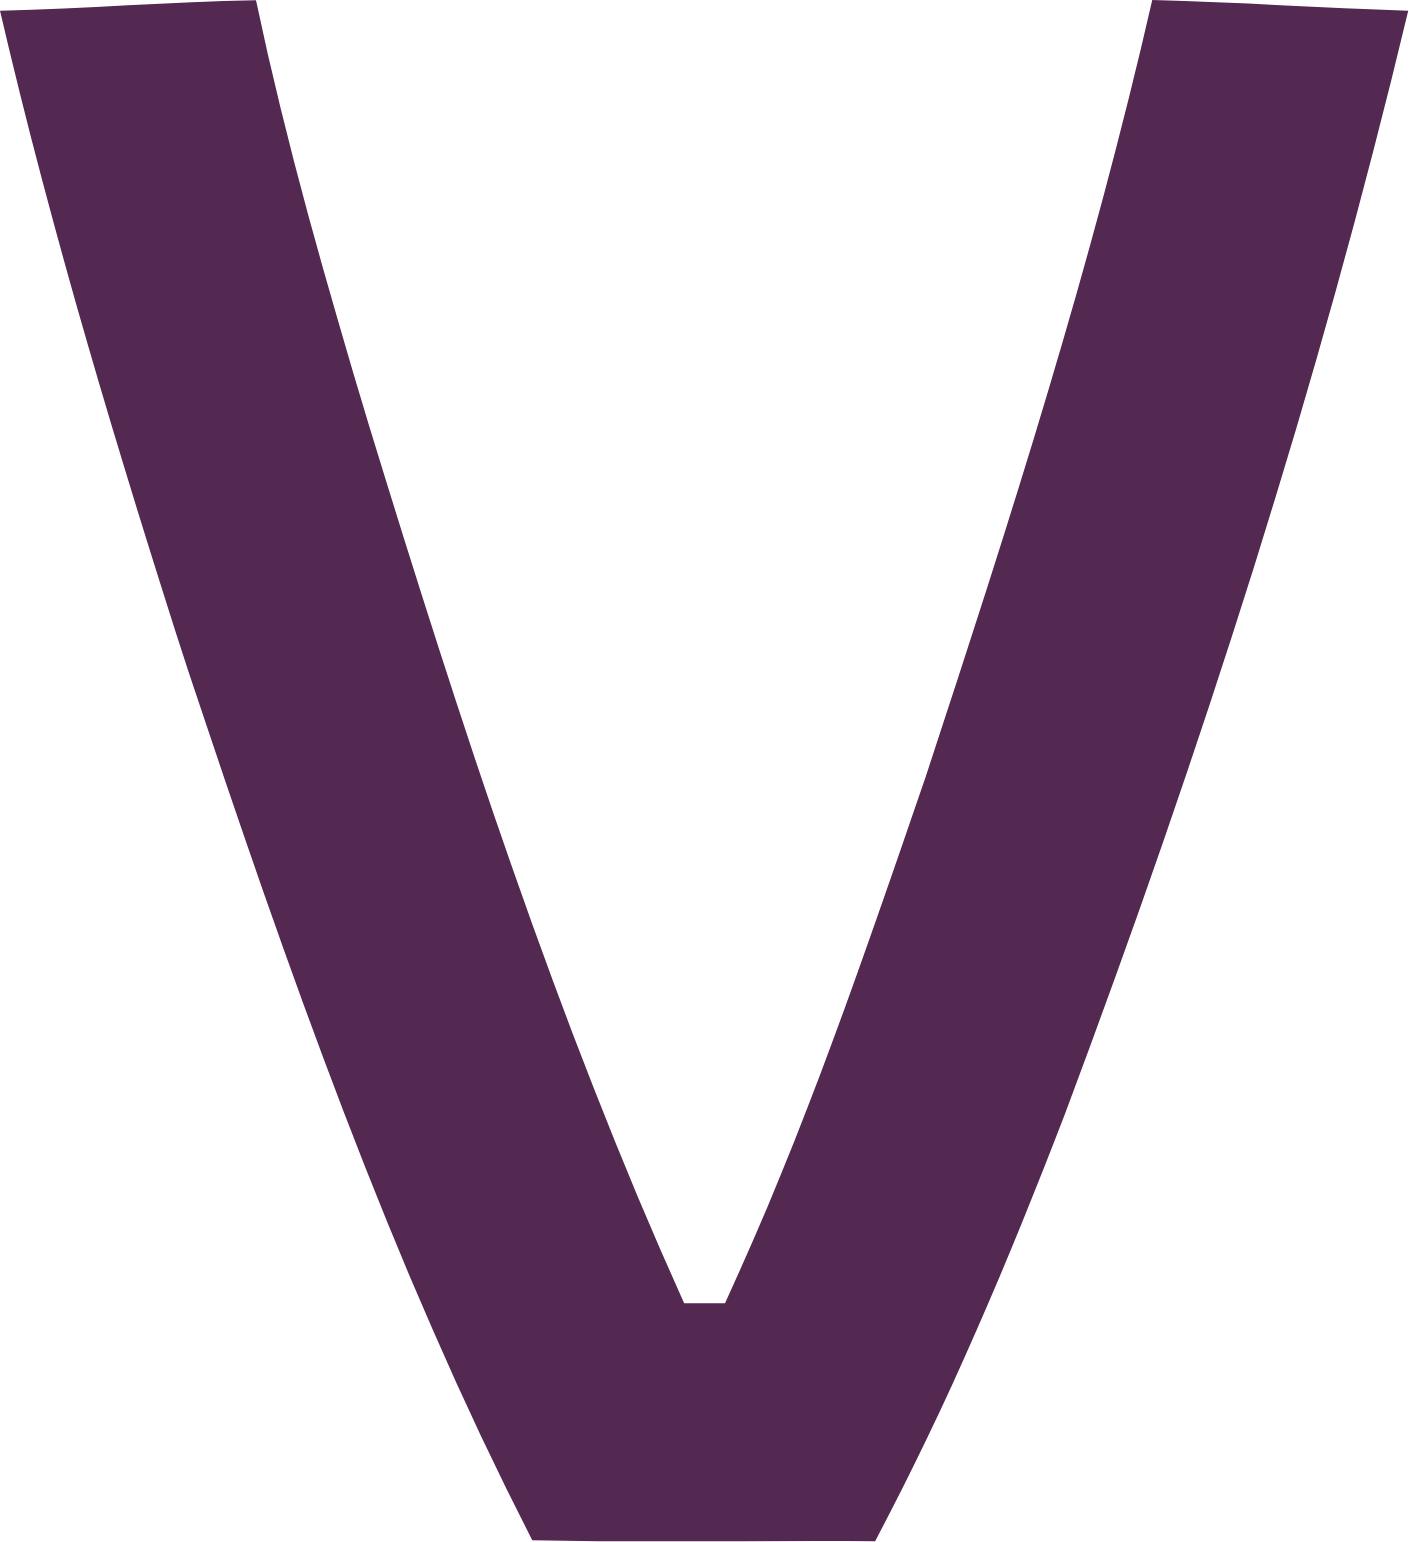 Vistry Group logo (PNG transparent)